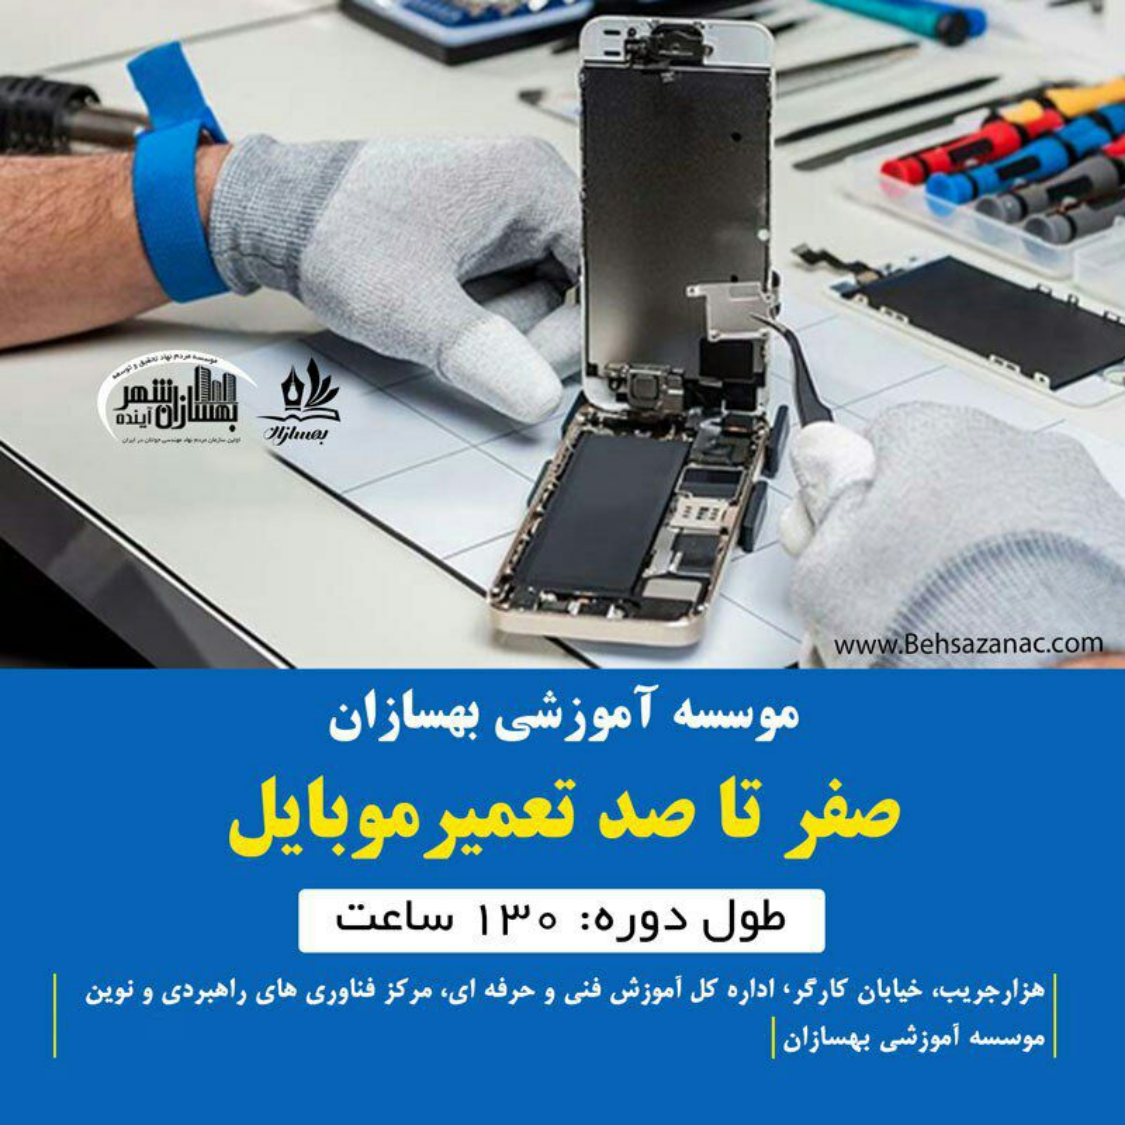 آموزش تعمیرات موبایل در اصفهان | دوره تعمیر موبایل اصفهان | کلاس تعمیر موبایل در اصفهان